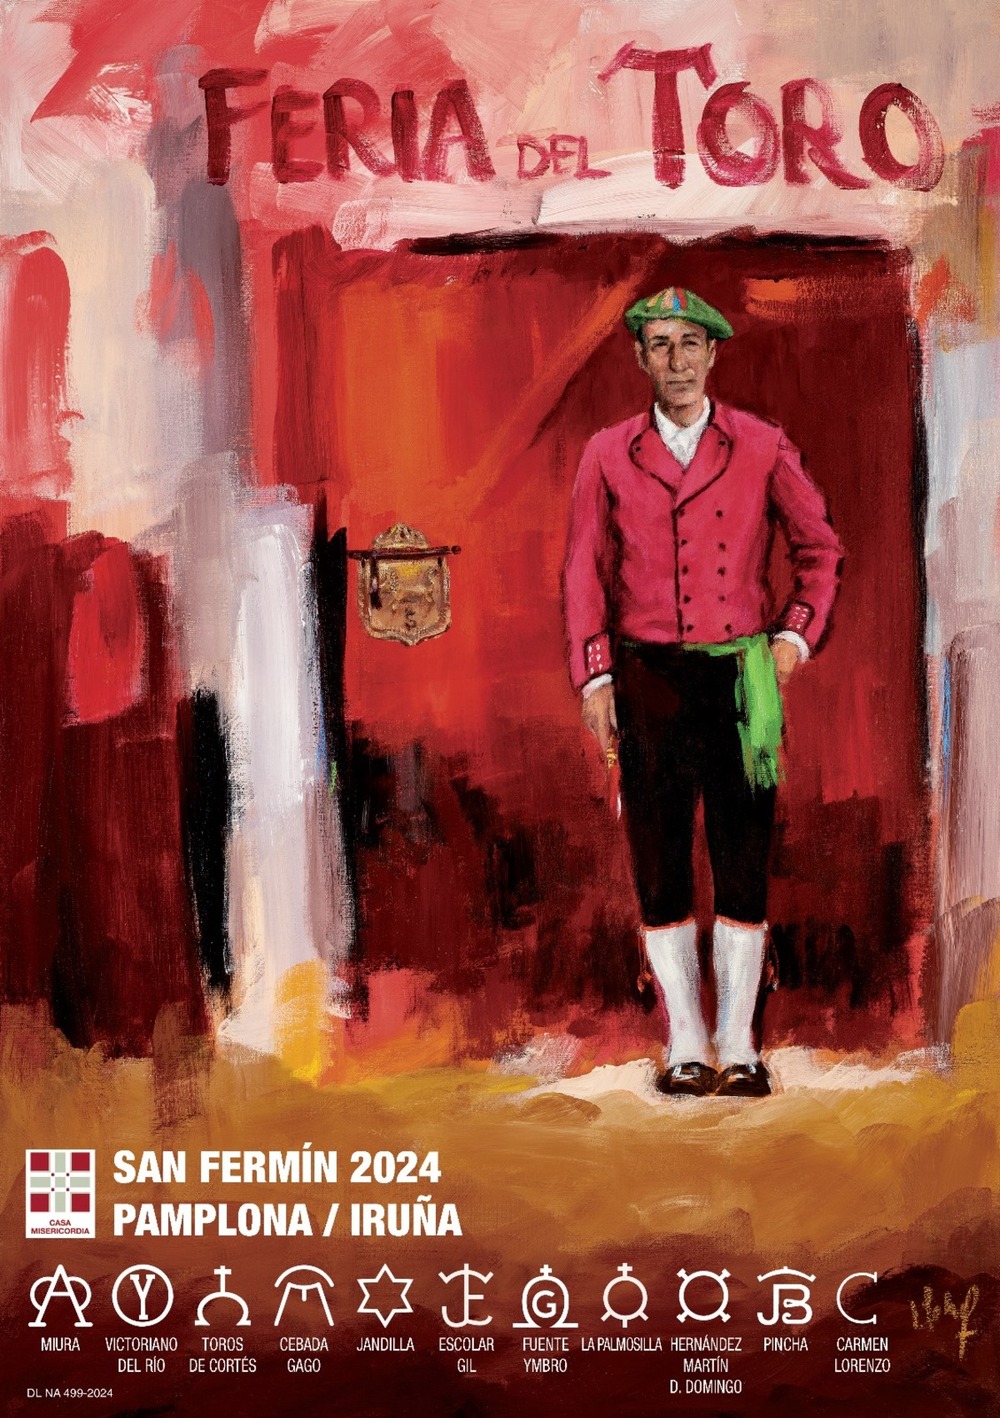 Imagen del cartel anunciador de San Fermín 2024